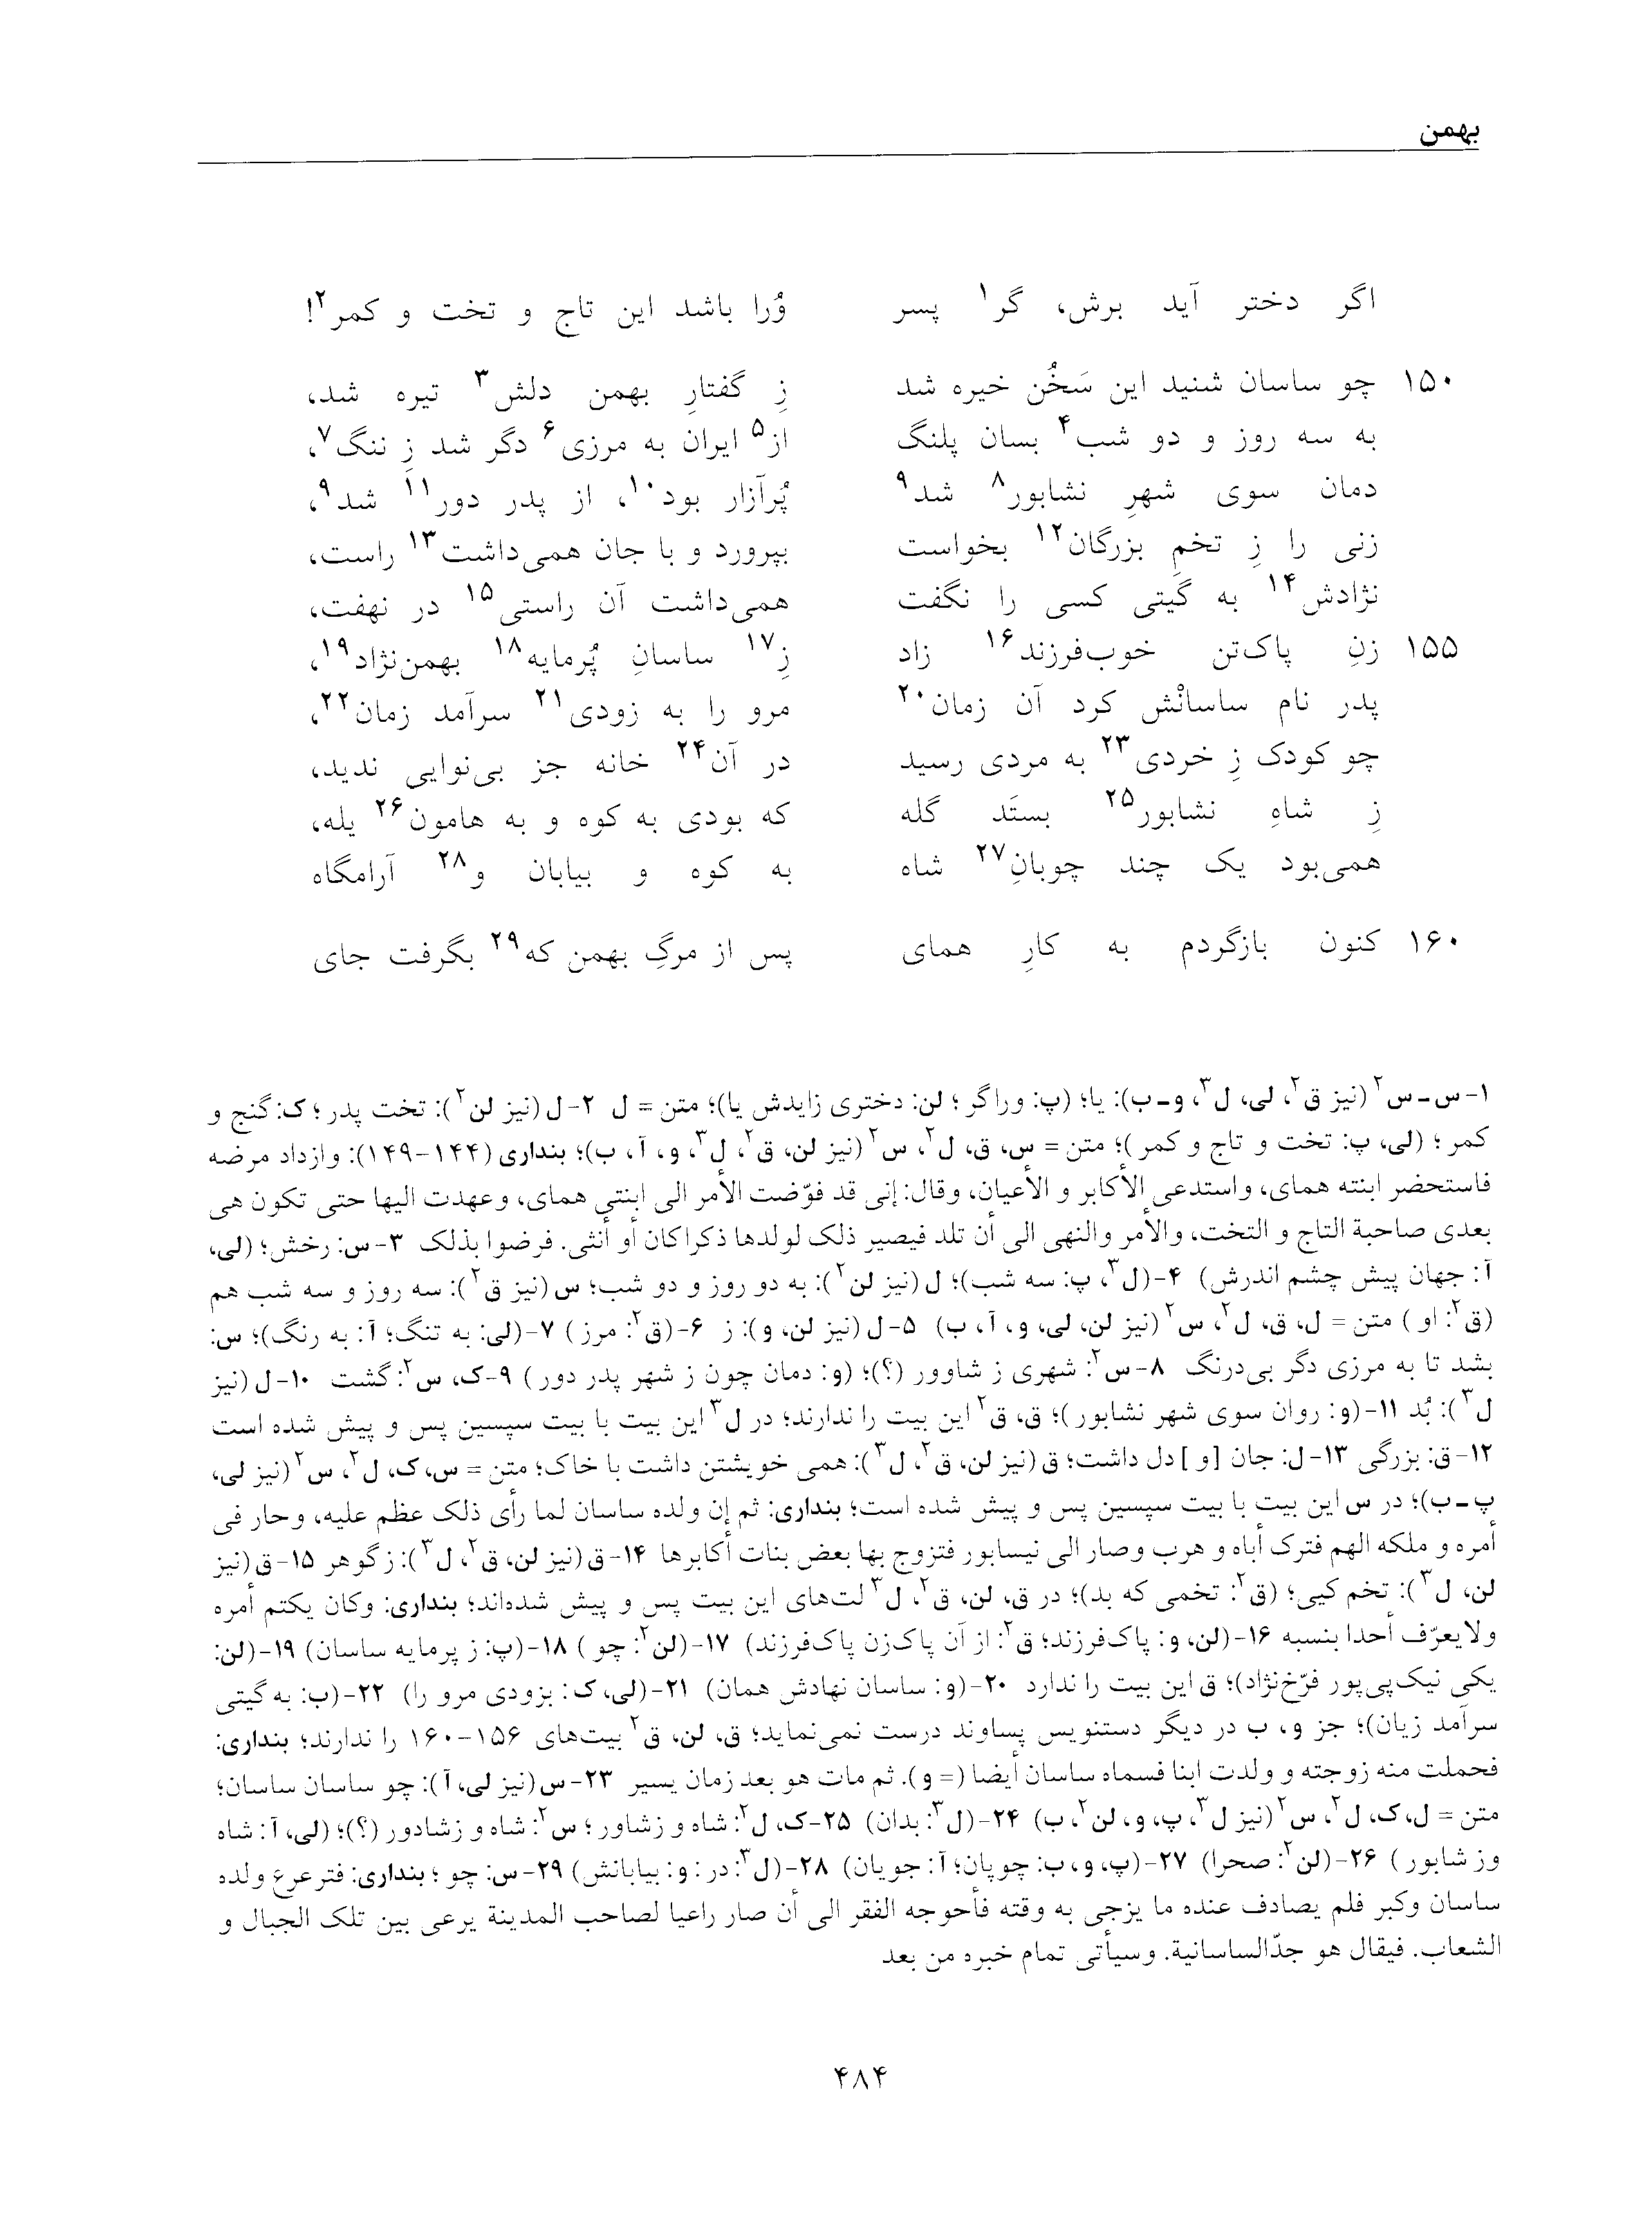 vol. 5, p. 484